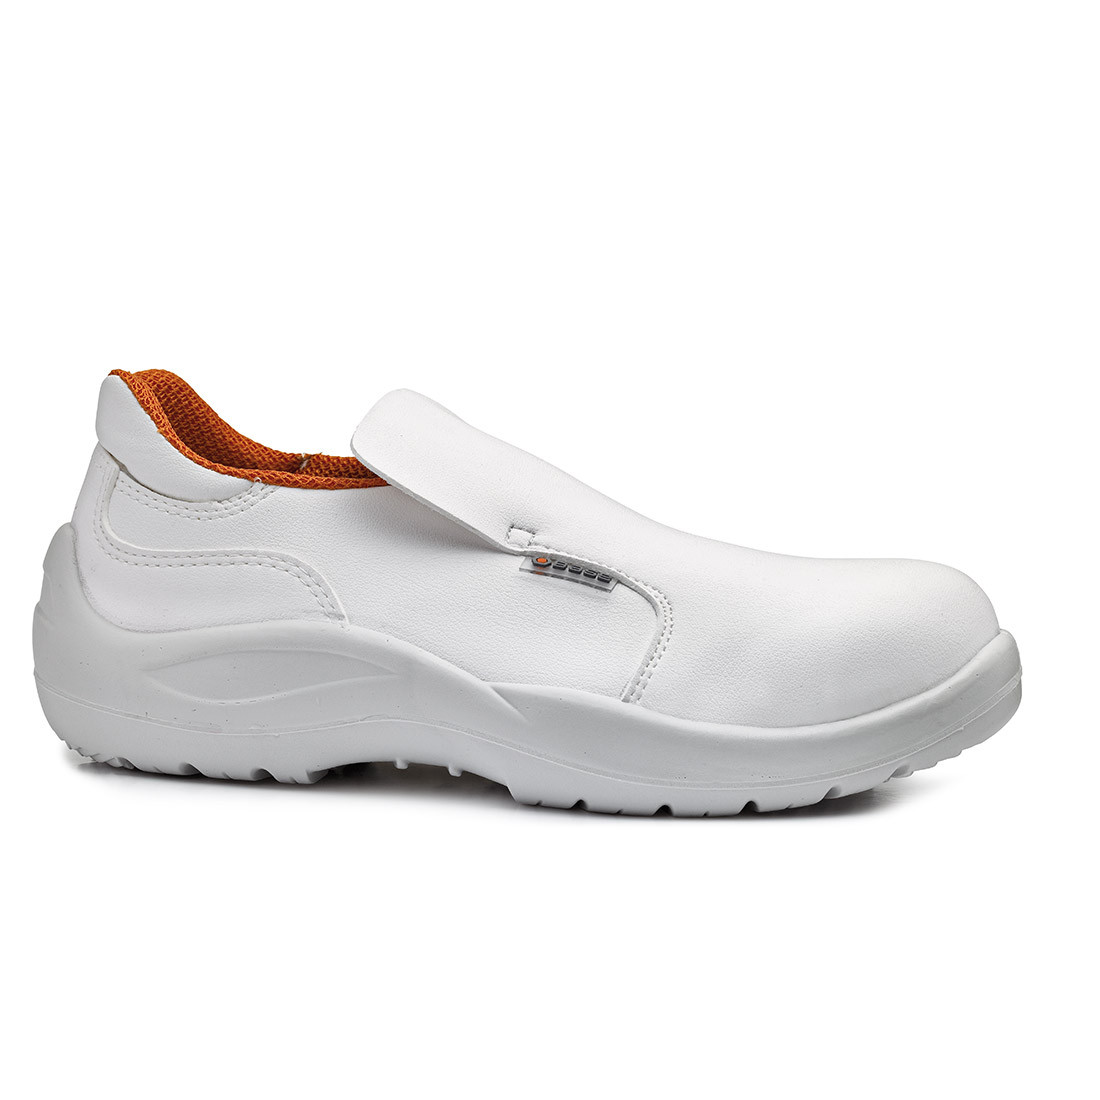 Pantofi Cloro S2 SRC - Incaltaminte de protectie | Bocanci, Pantofi, Sandale, Cizme